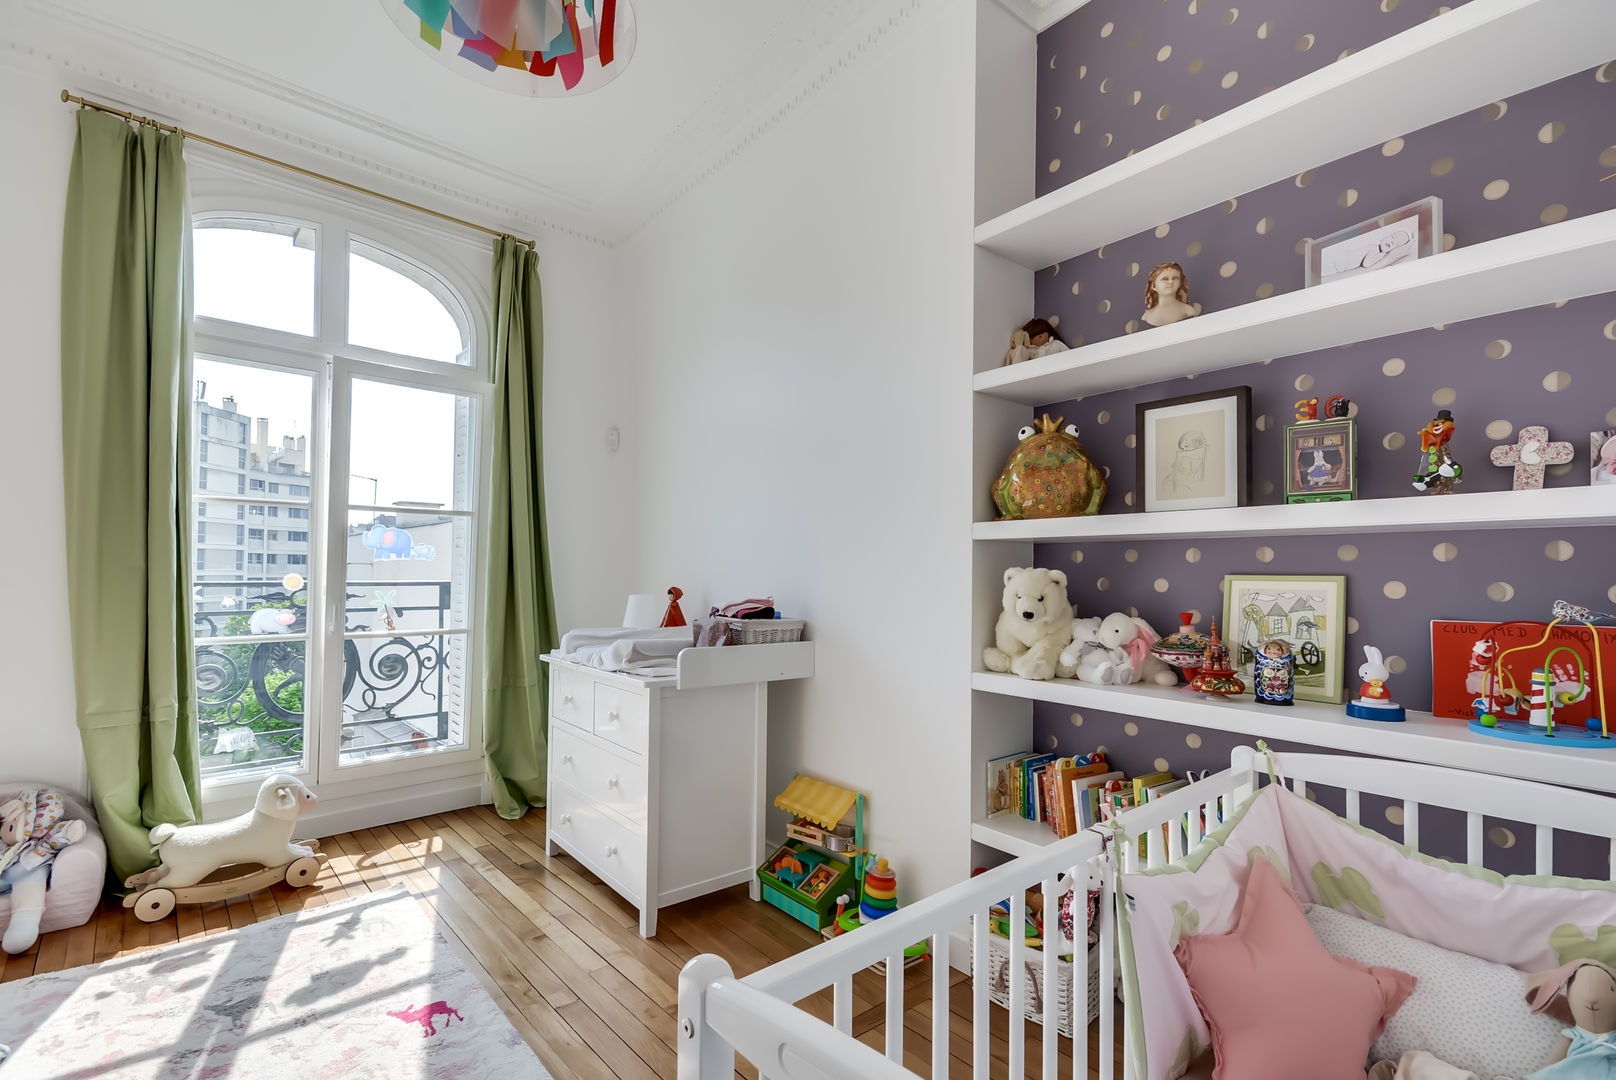 Un appartement haussmanien revisité - Paris 16e, ATELIER FB ATELIER FB Dormitorios infantiles de estilo moderno